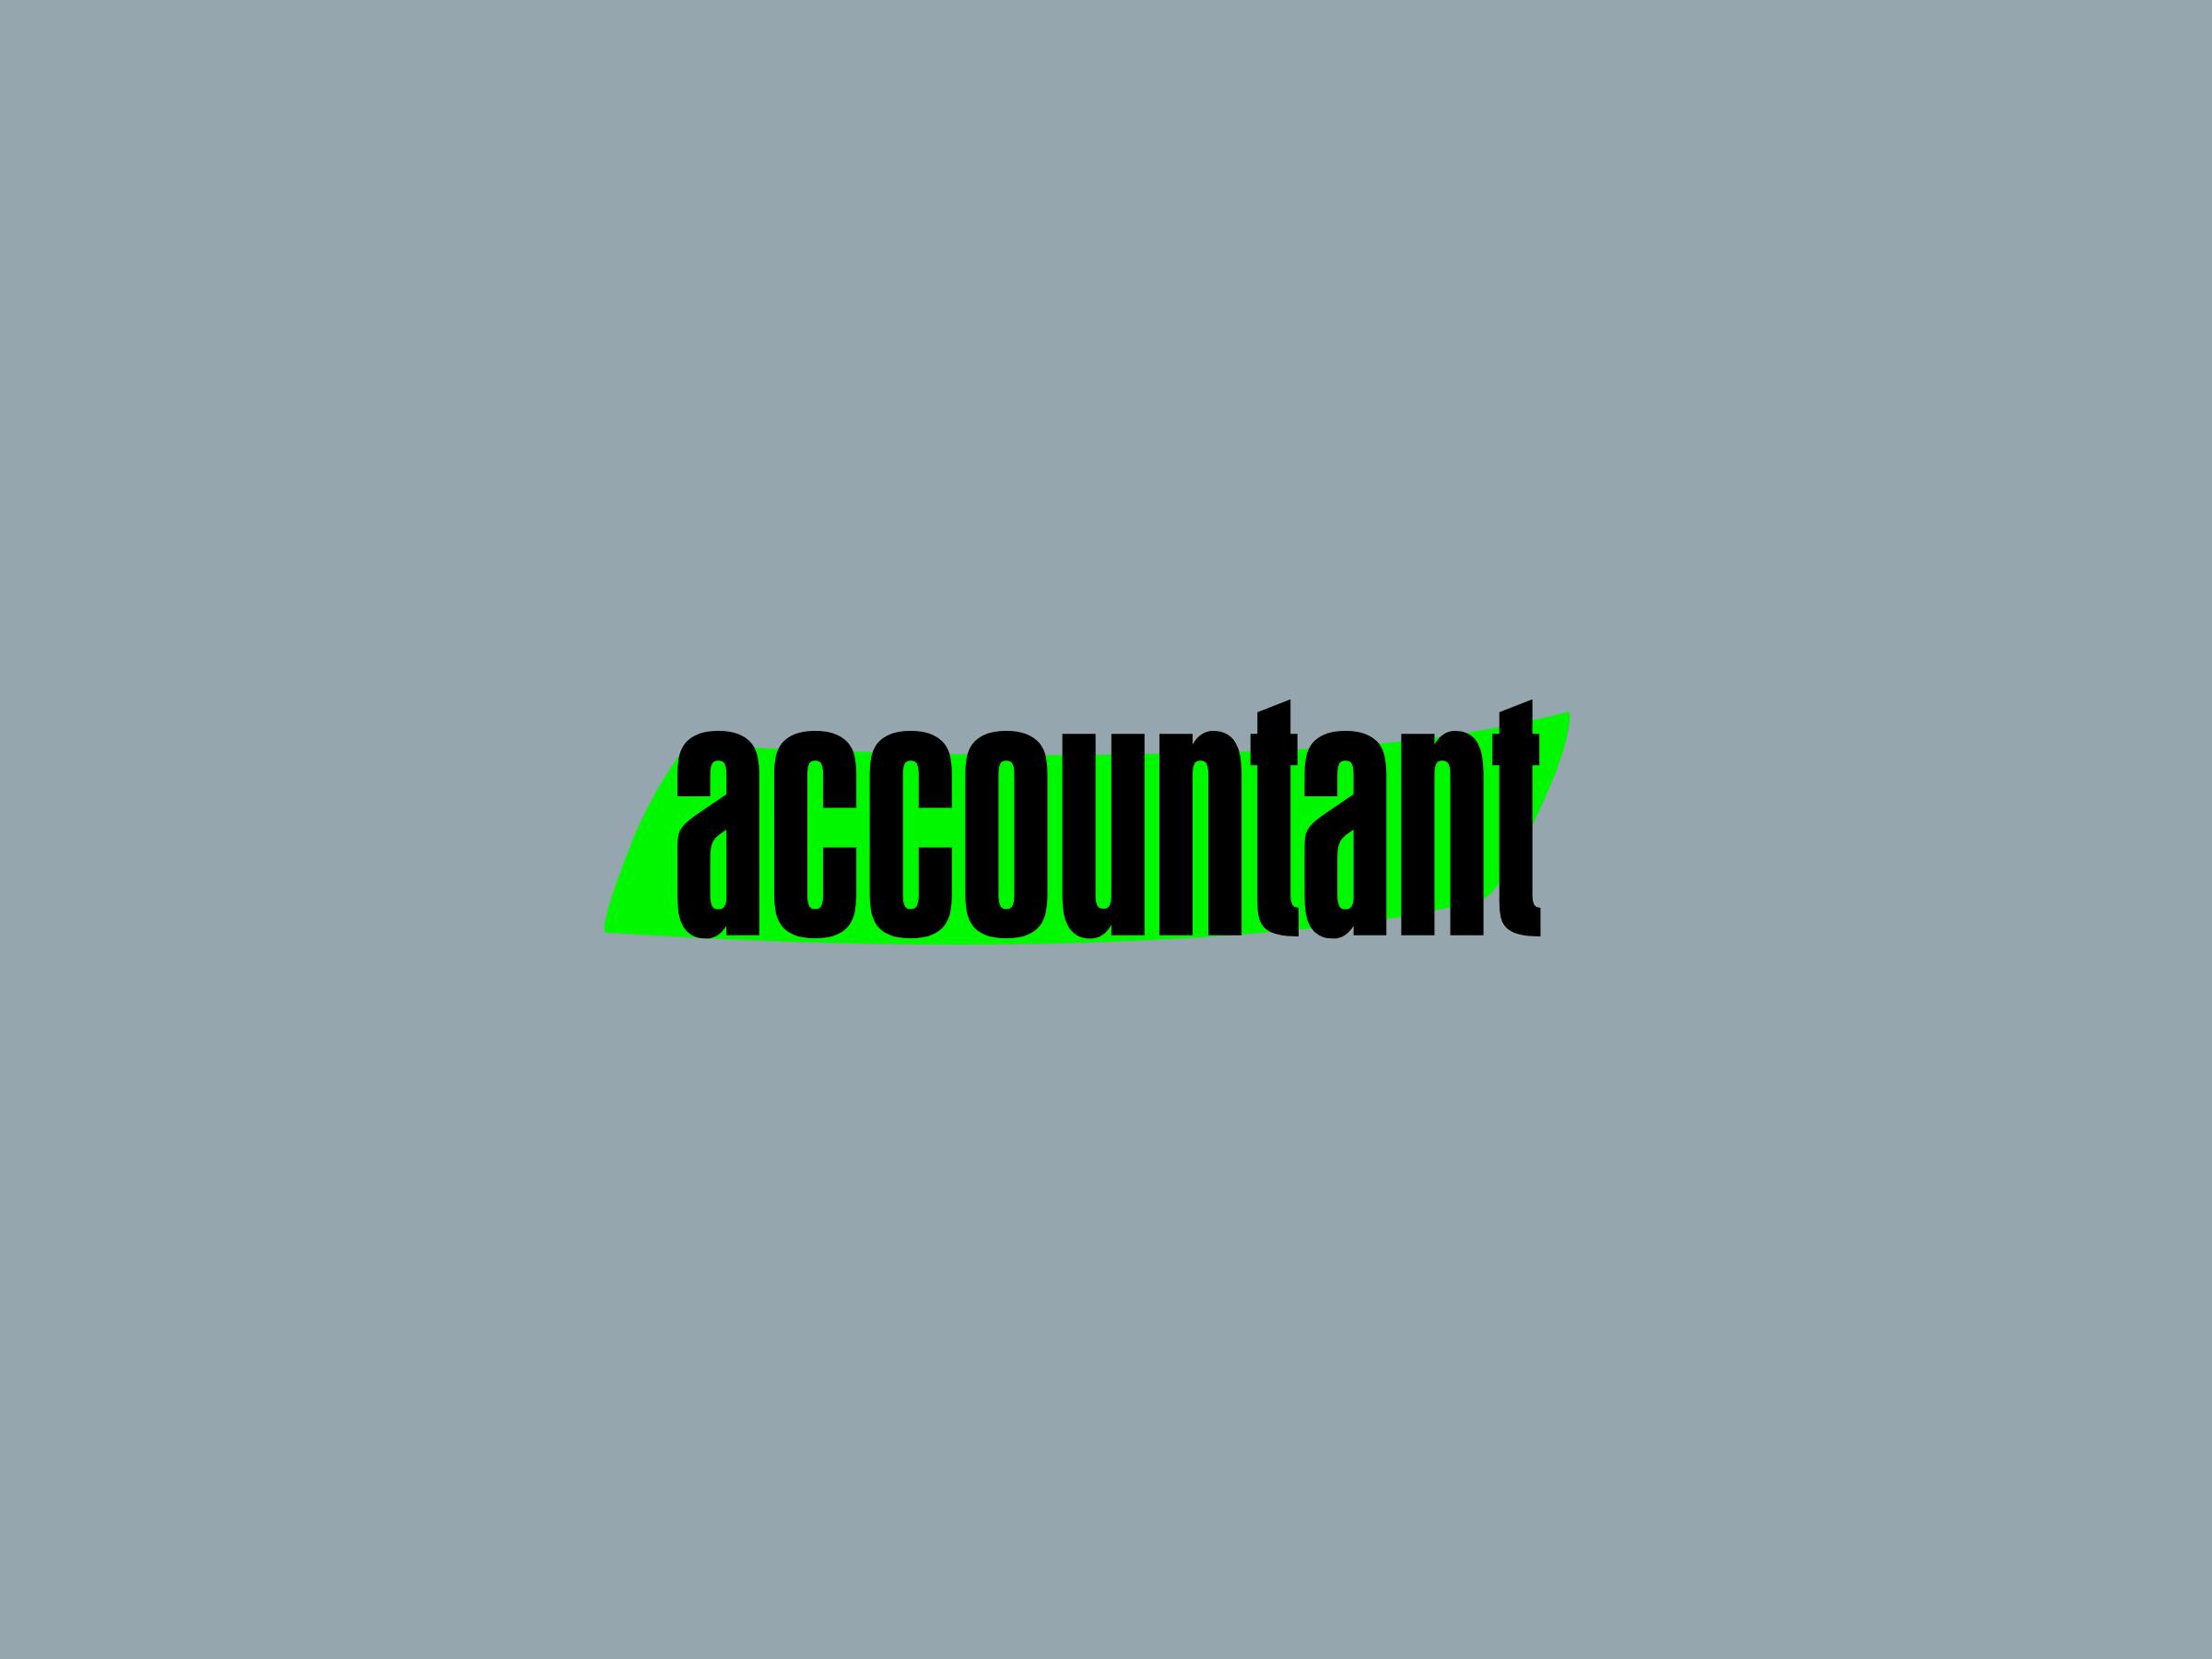 Het woord 'accountant' op een grijze achtergrond